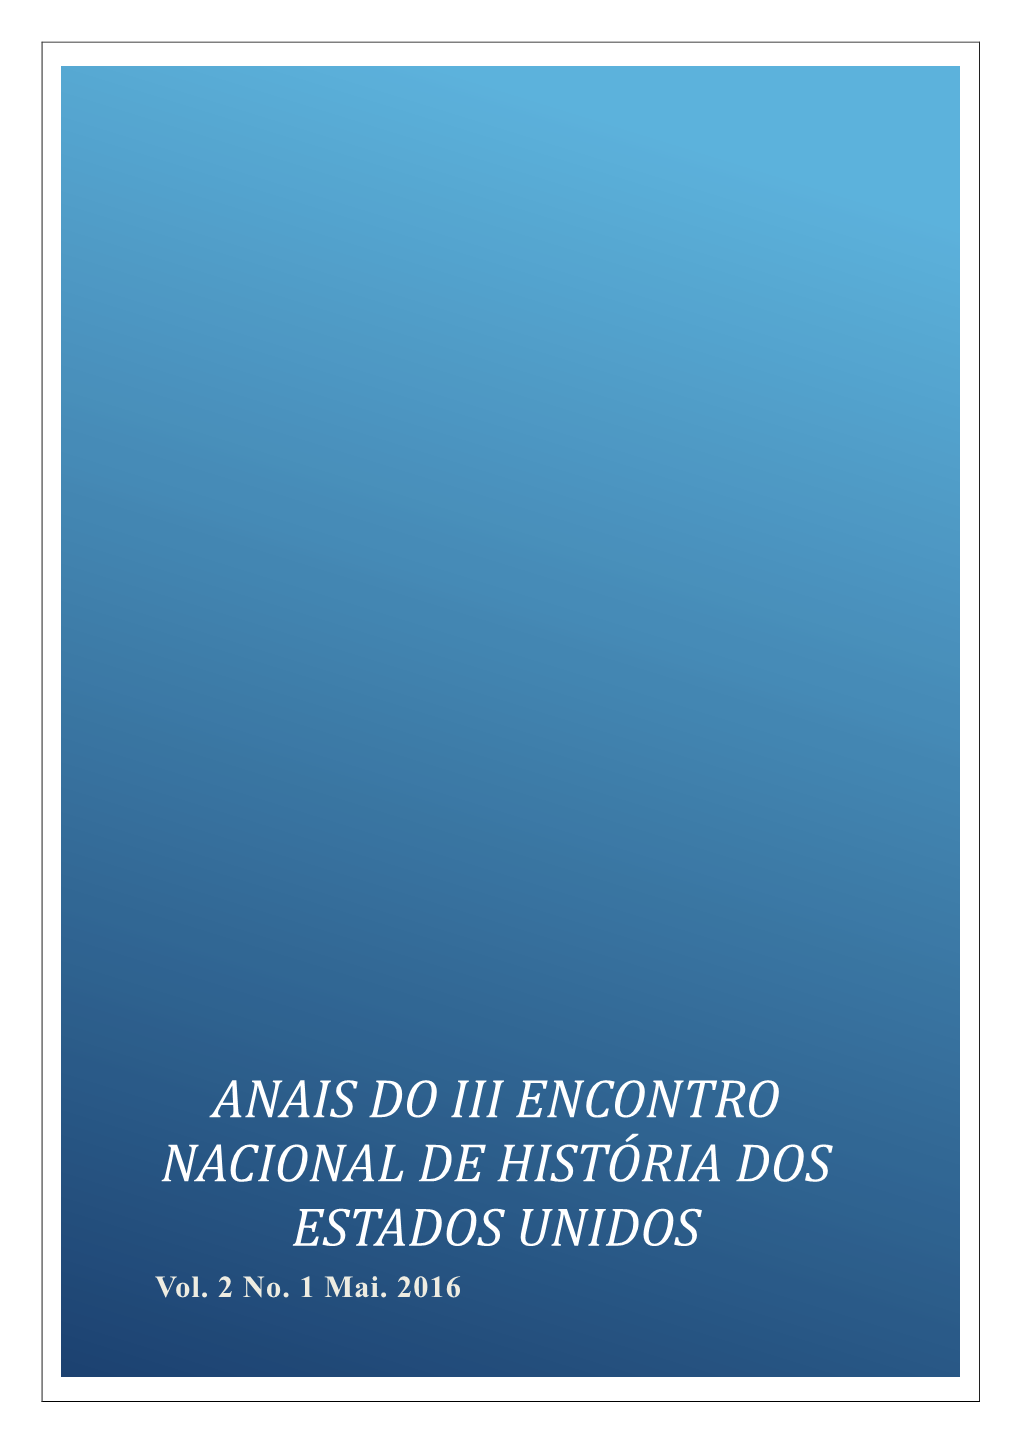 ANAIS DO III ENCONTRO NACIONAL DE HISTÓRIA DOS ESTADOS UNIDOS Vol